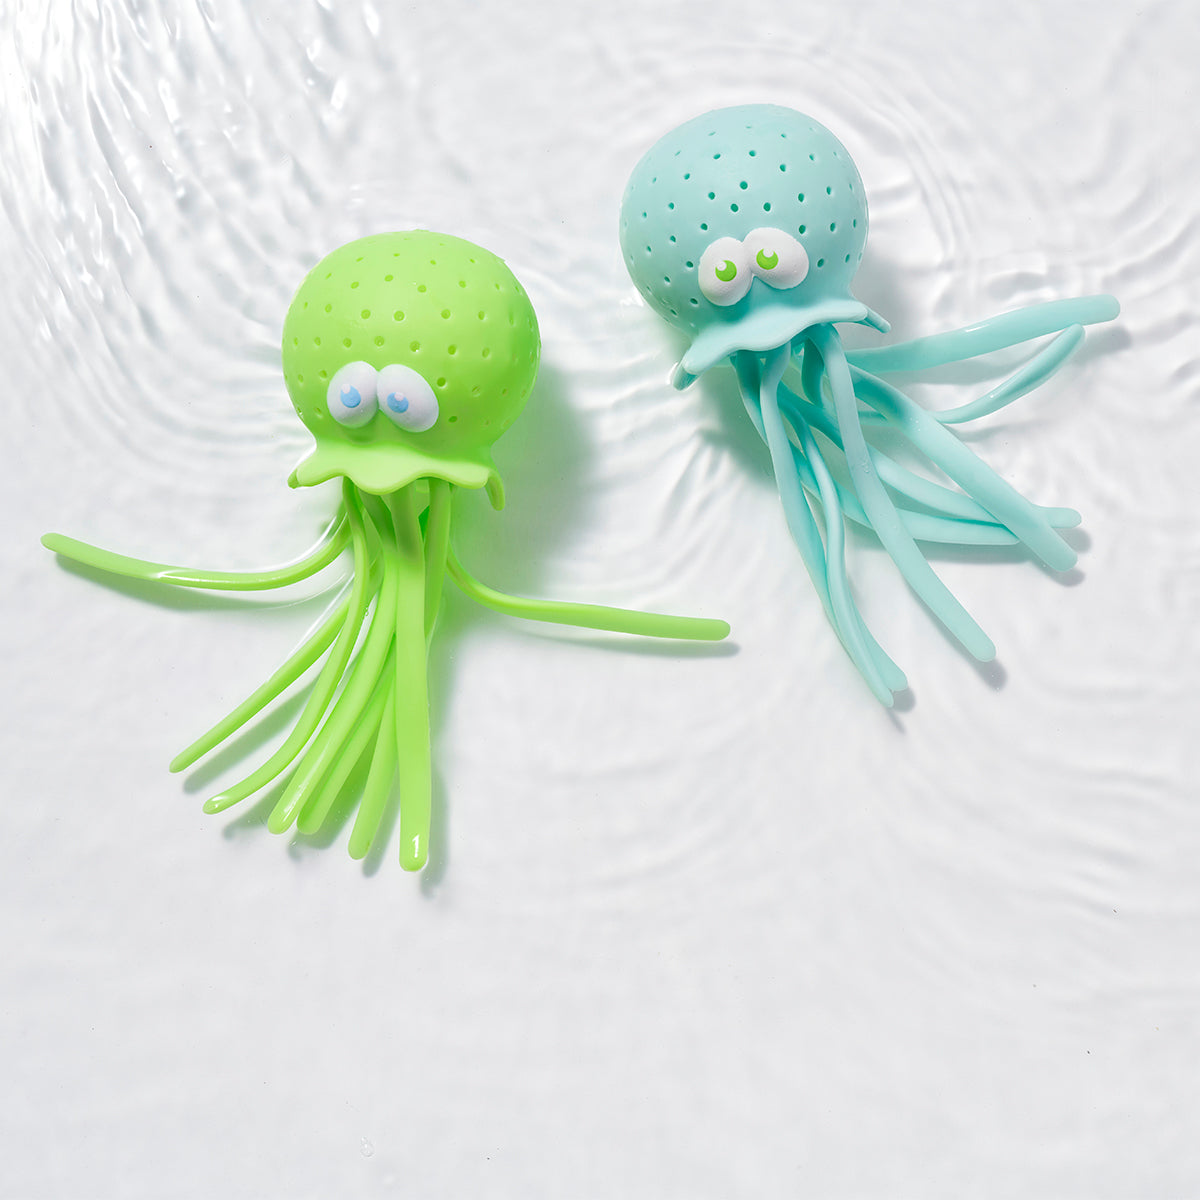 Sunnylife Octopus Bath Toy, Set of 2